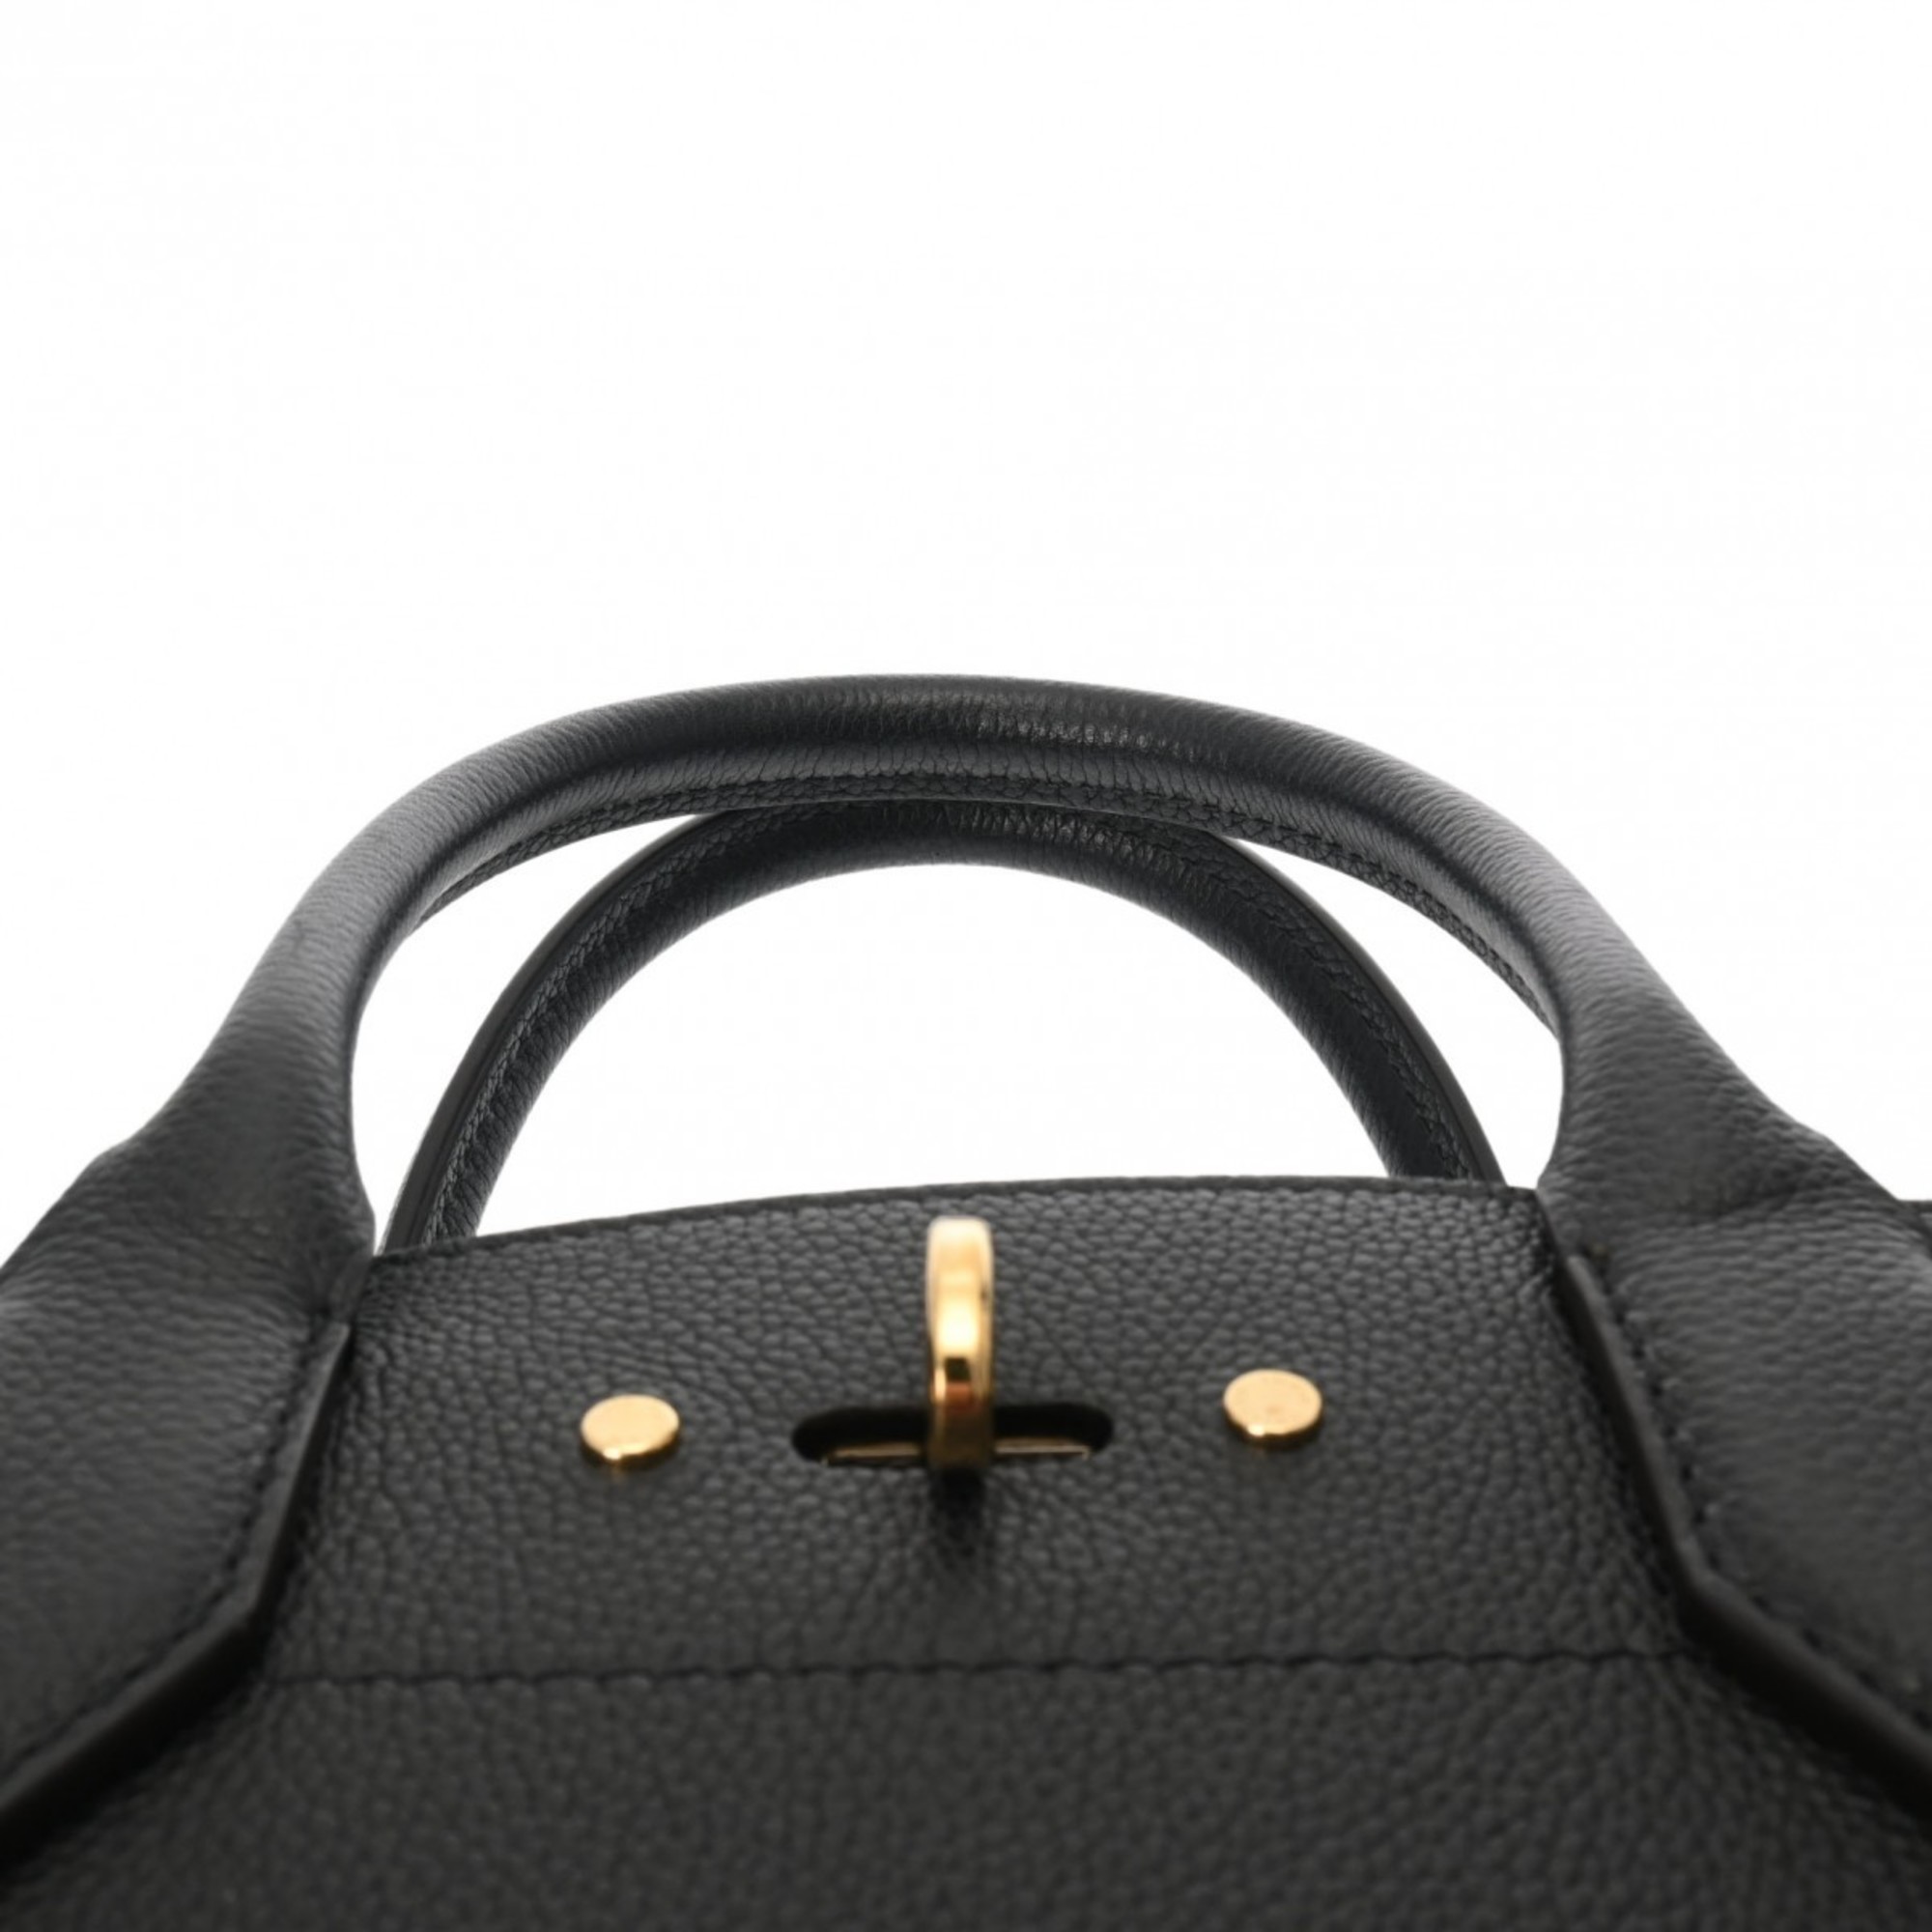 LOUIS VUITTON City Steamer MM Black/Bordeaux - Women's Taurillon Leather Handbag